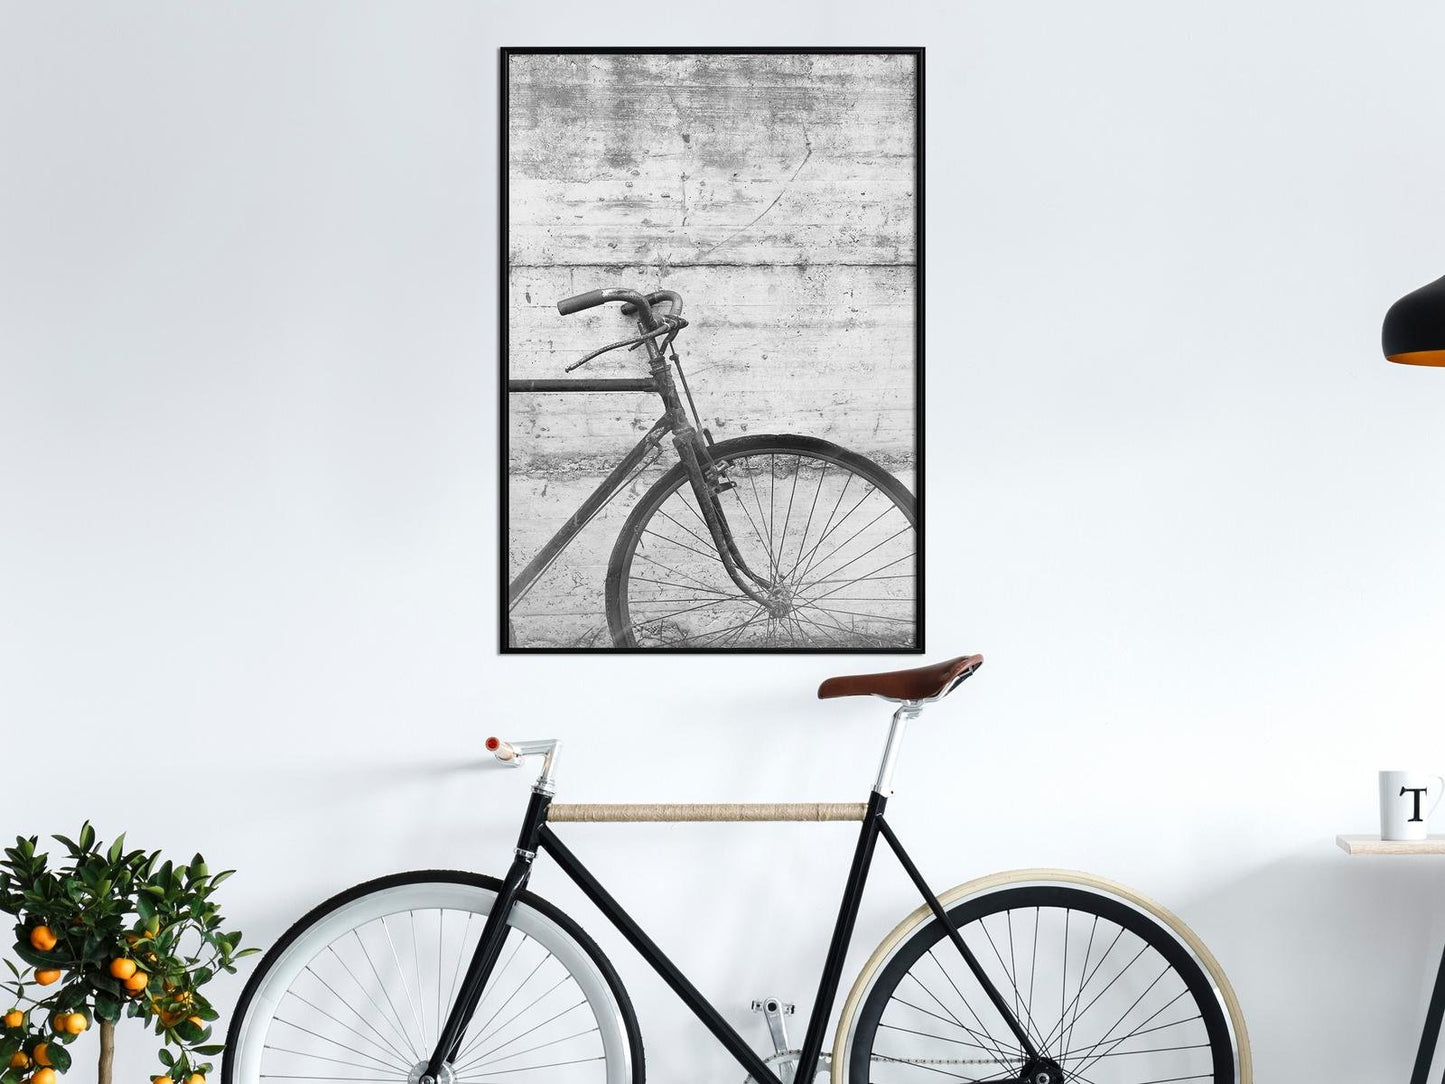 Fahrrad lehnt an der Wand